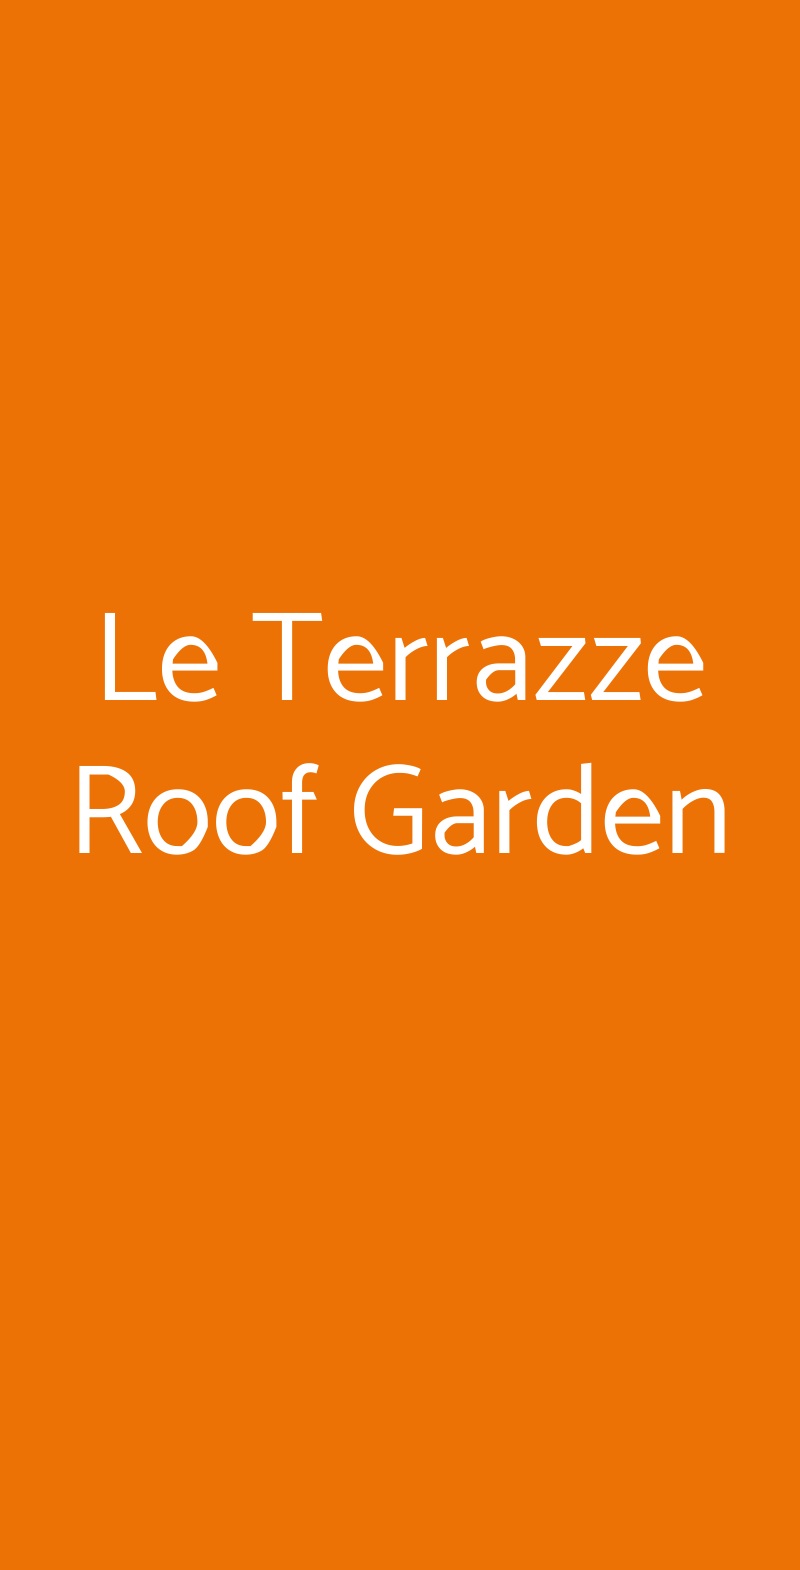 Le Terrazze Roof Garden Pescara menù 1 pagina